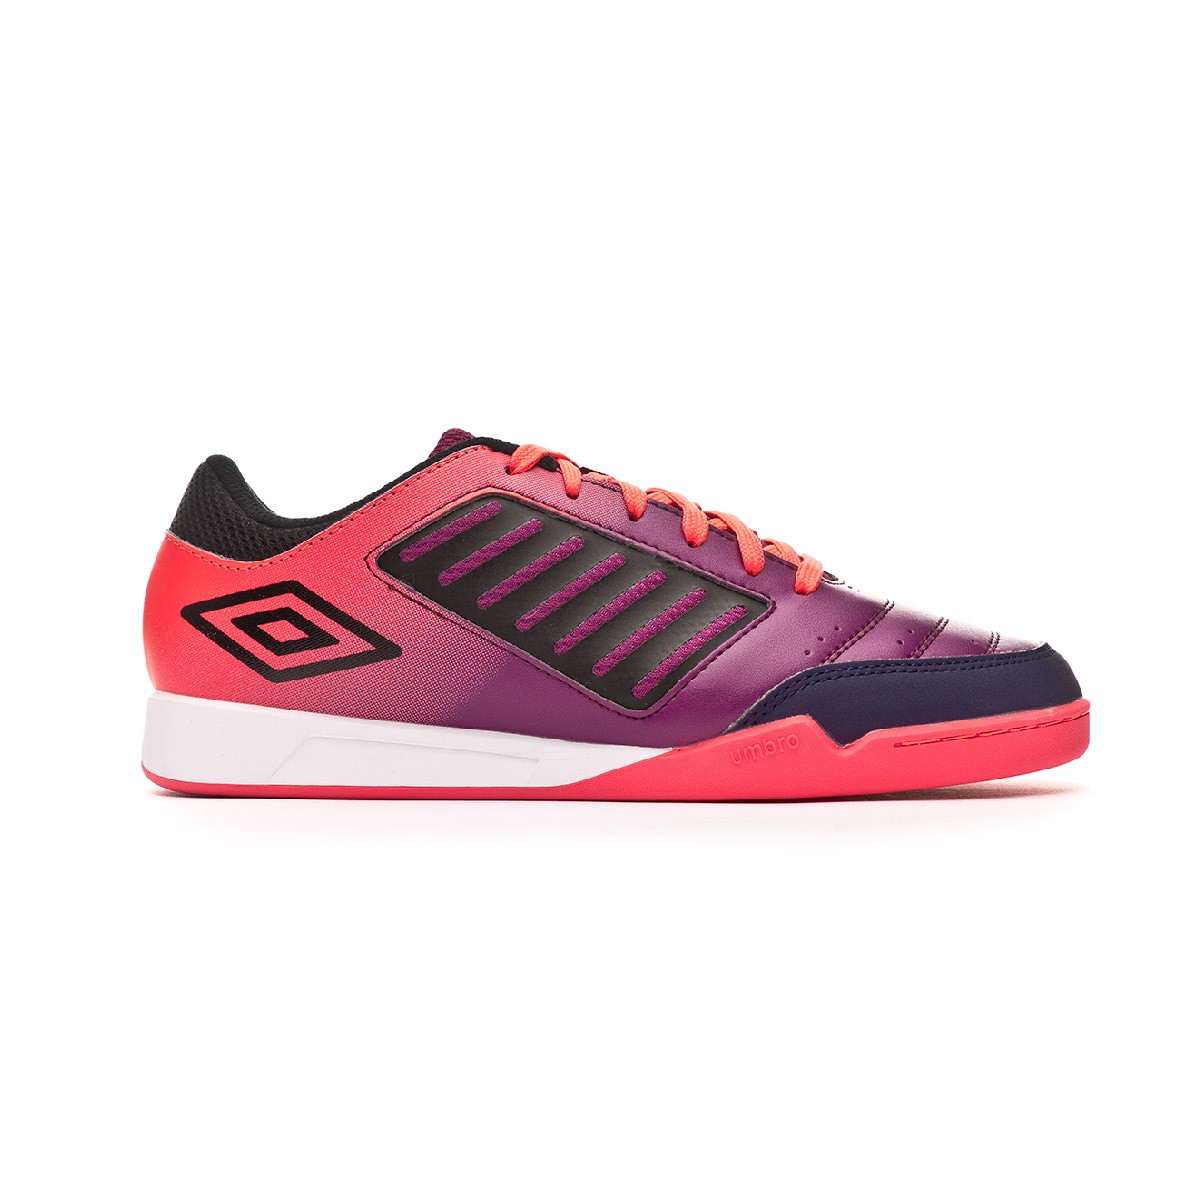 pink futsal shoes